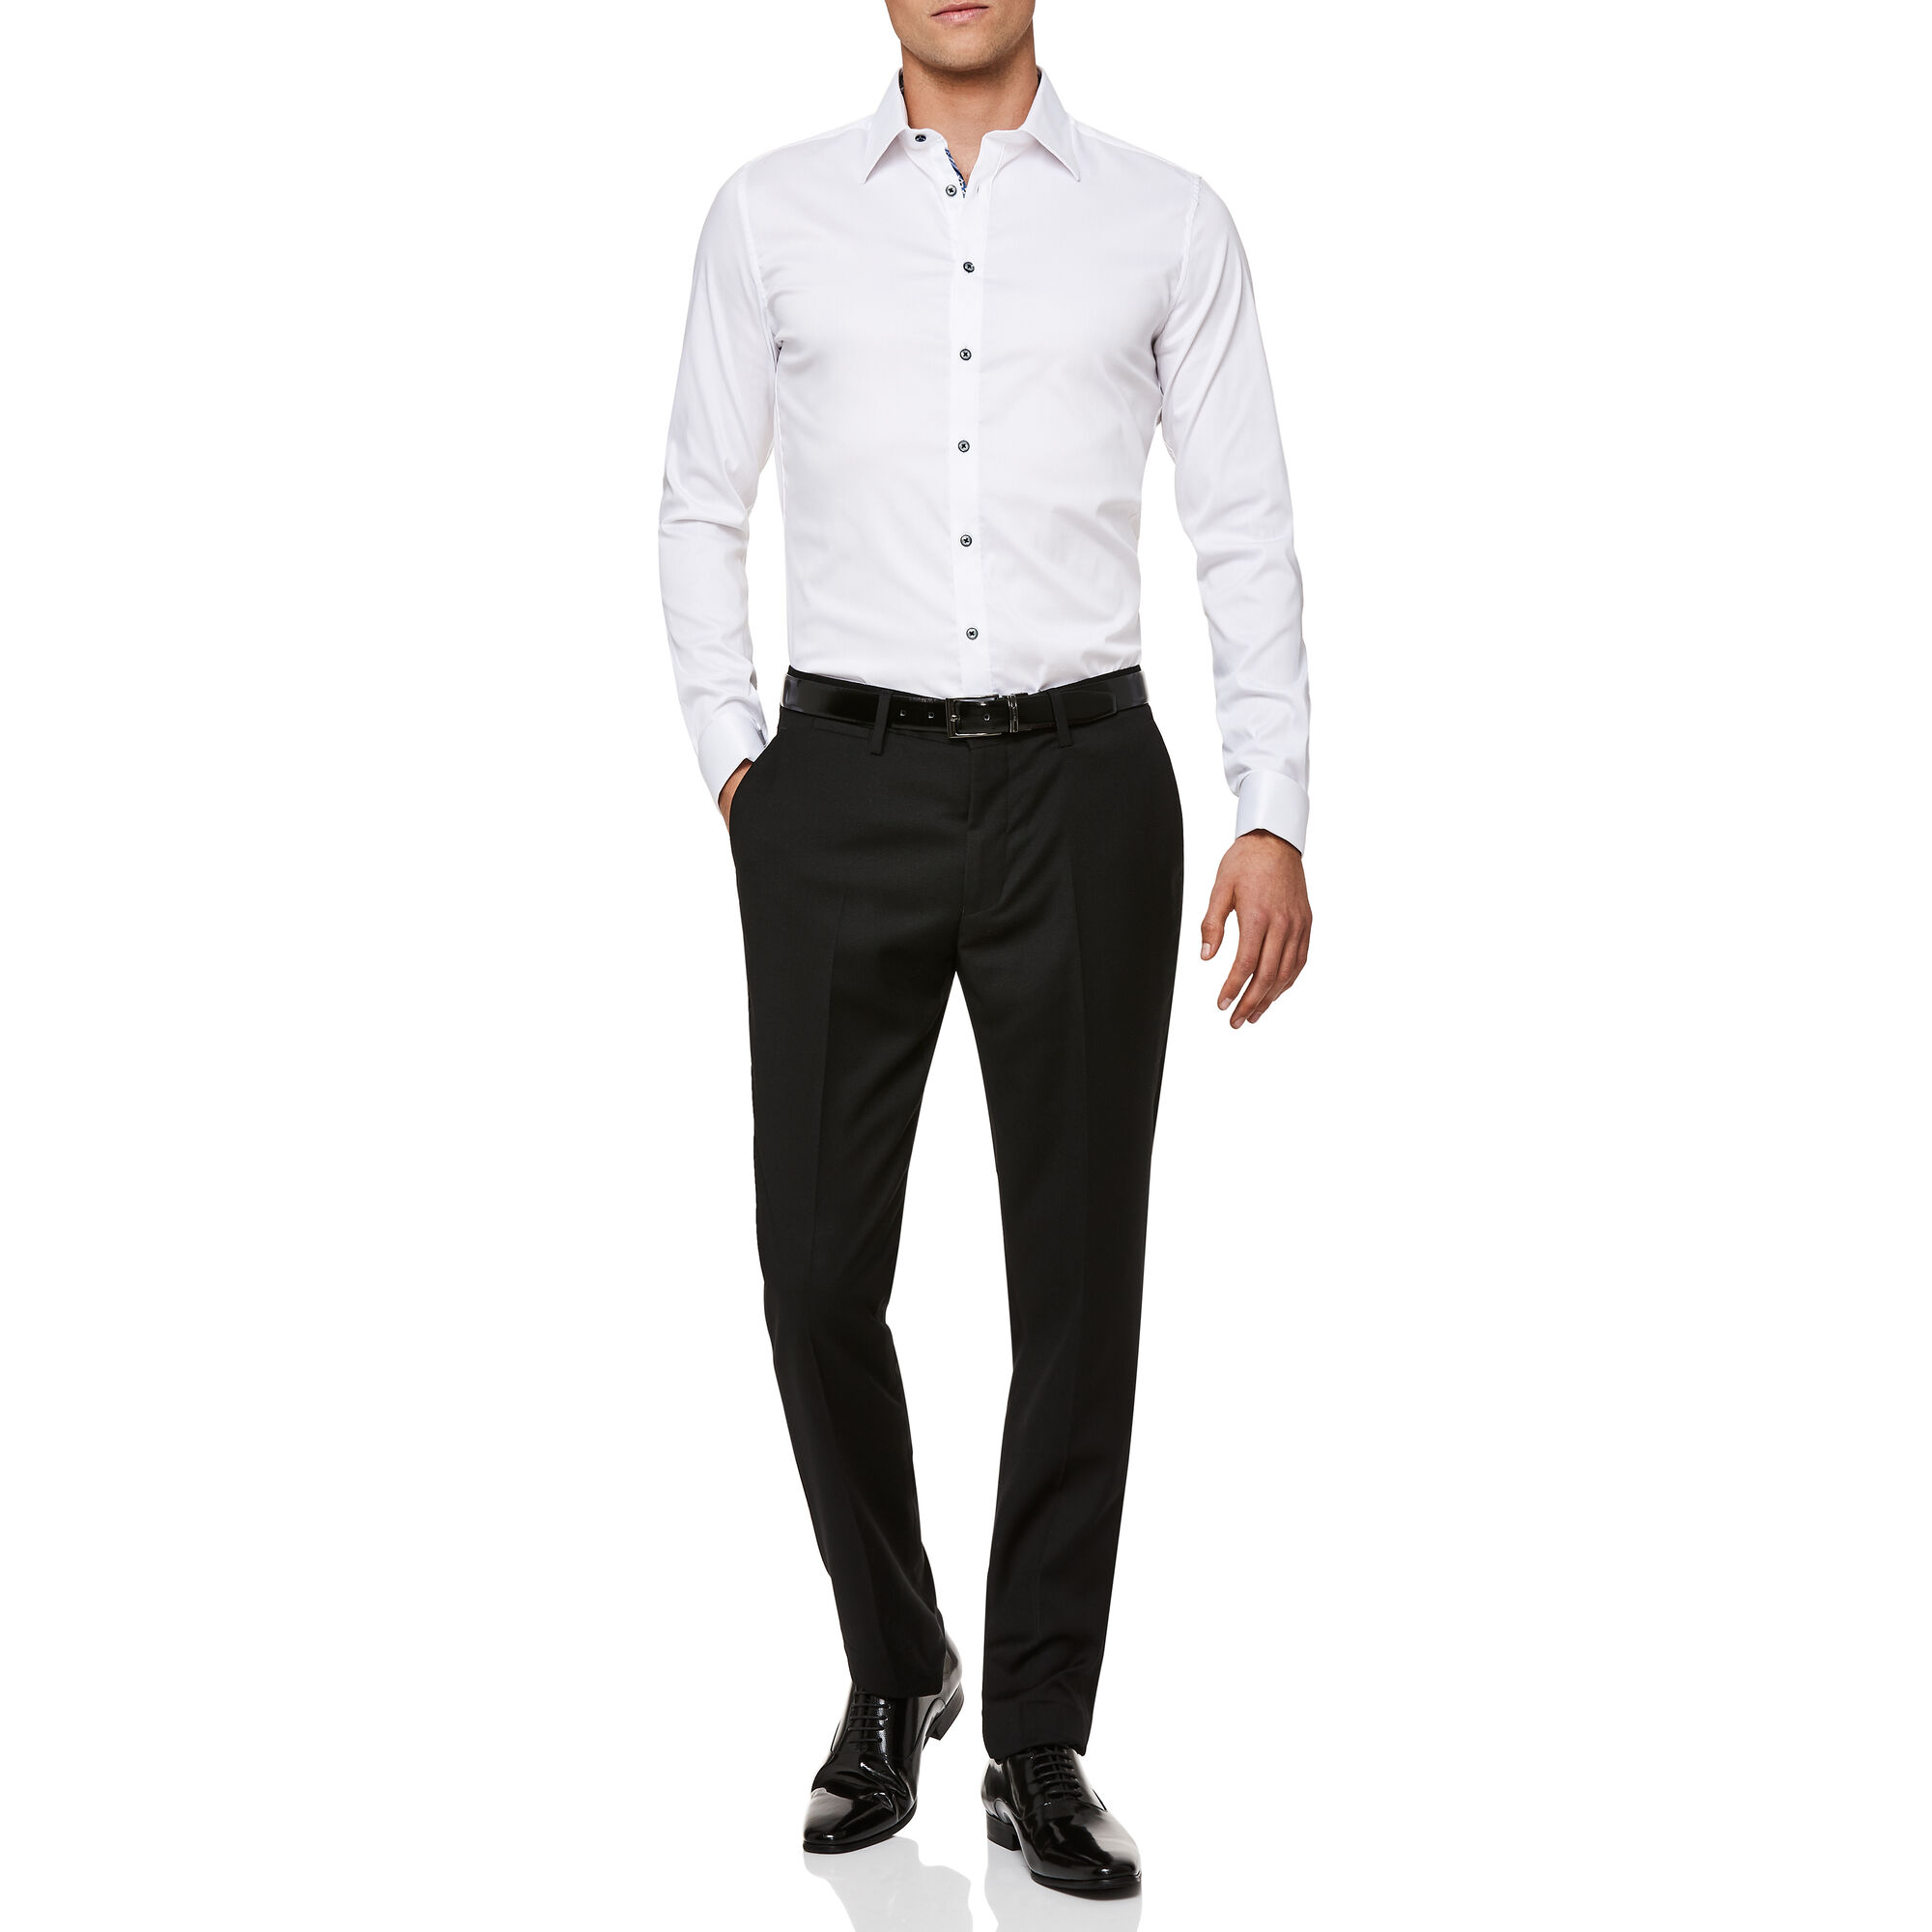 Ortelle - Black - Regular Stretch Textured Suit Pants | Suit Pants ...